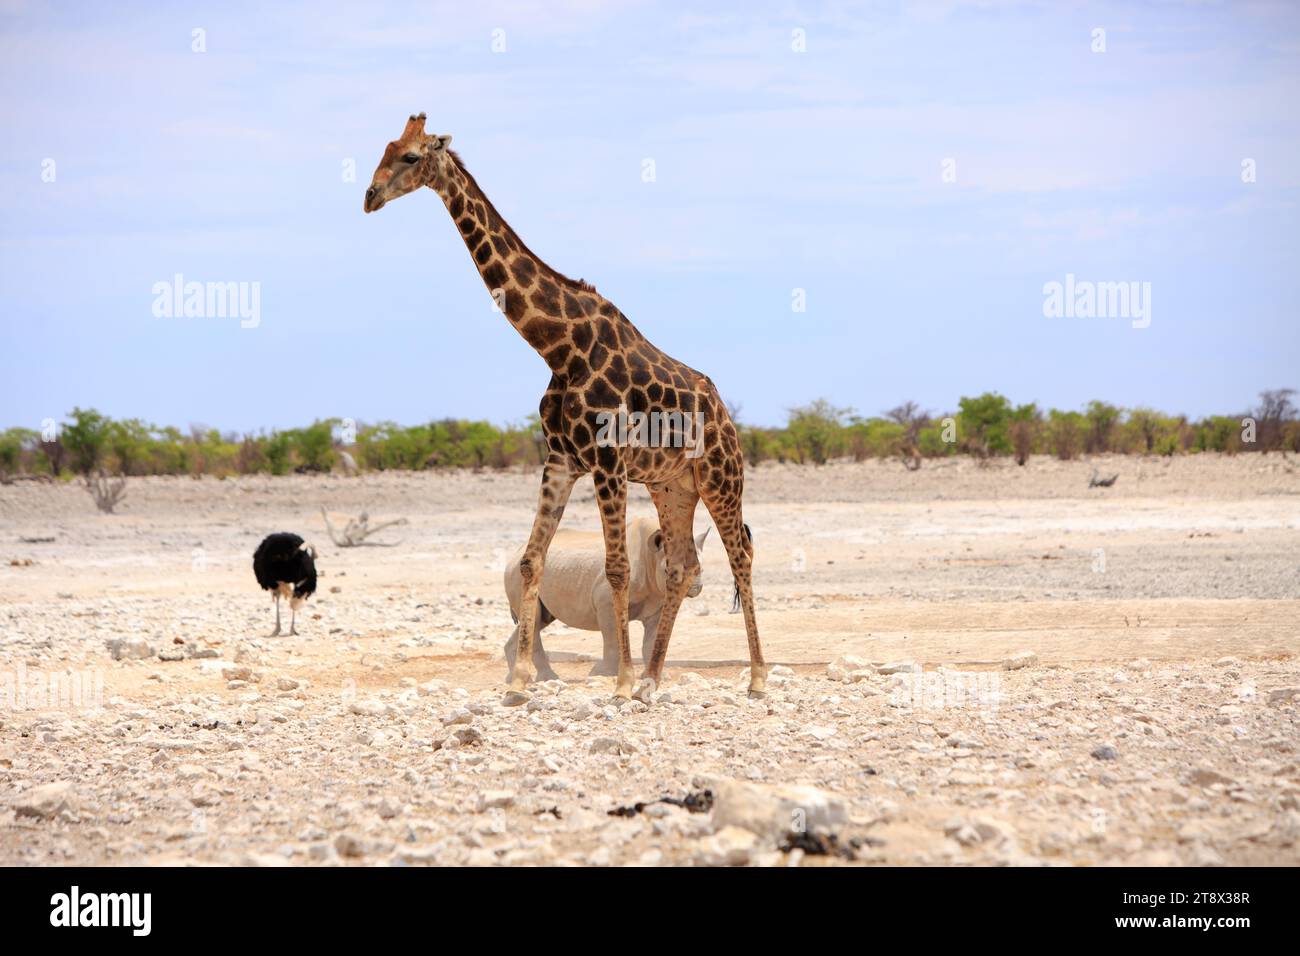 Schwarzes Nashorn und ein Schwarzer Strauß auf der afrikanischen Savanne mit einer großen erwachsenen Giraffe im Umkreis - Etoshaa Nationa; Park, Namibia, Afrika Stockfoto